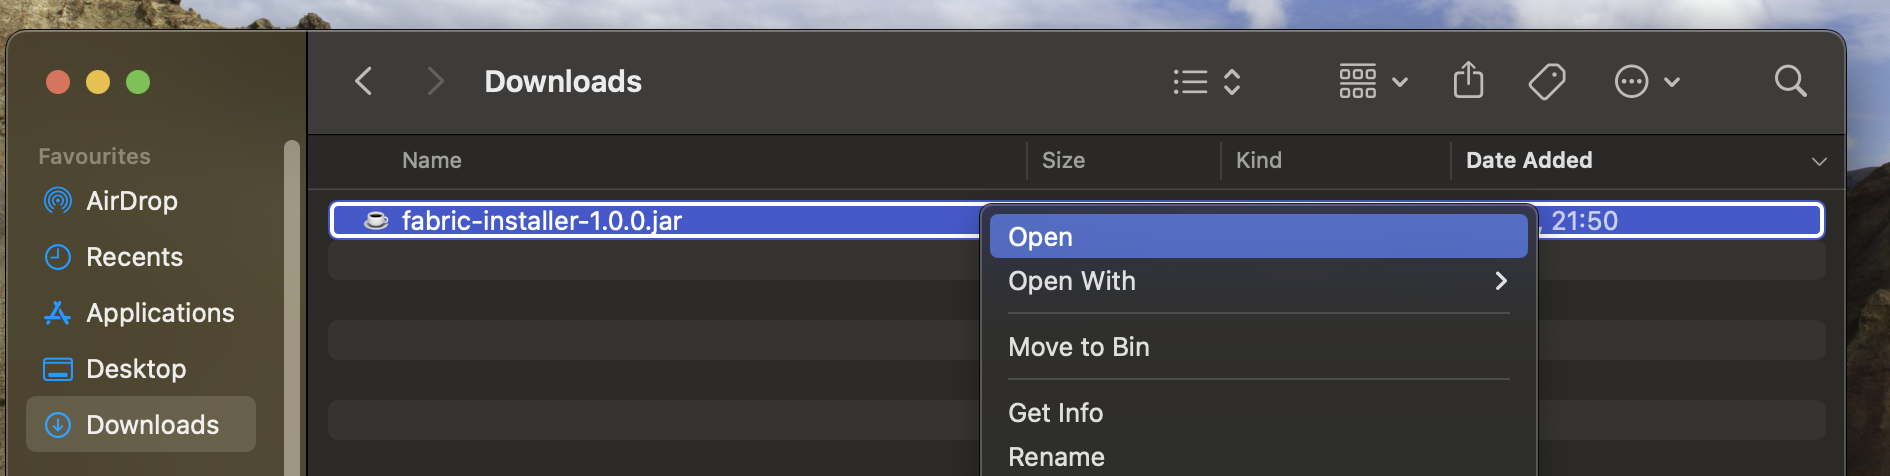 Кнопка "Open" при нажатии на файл установщика.